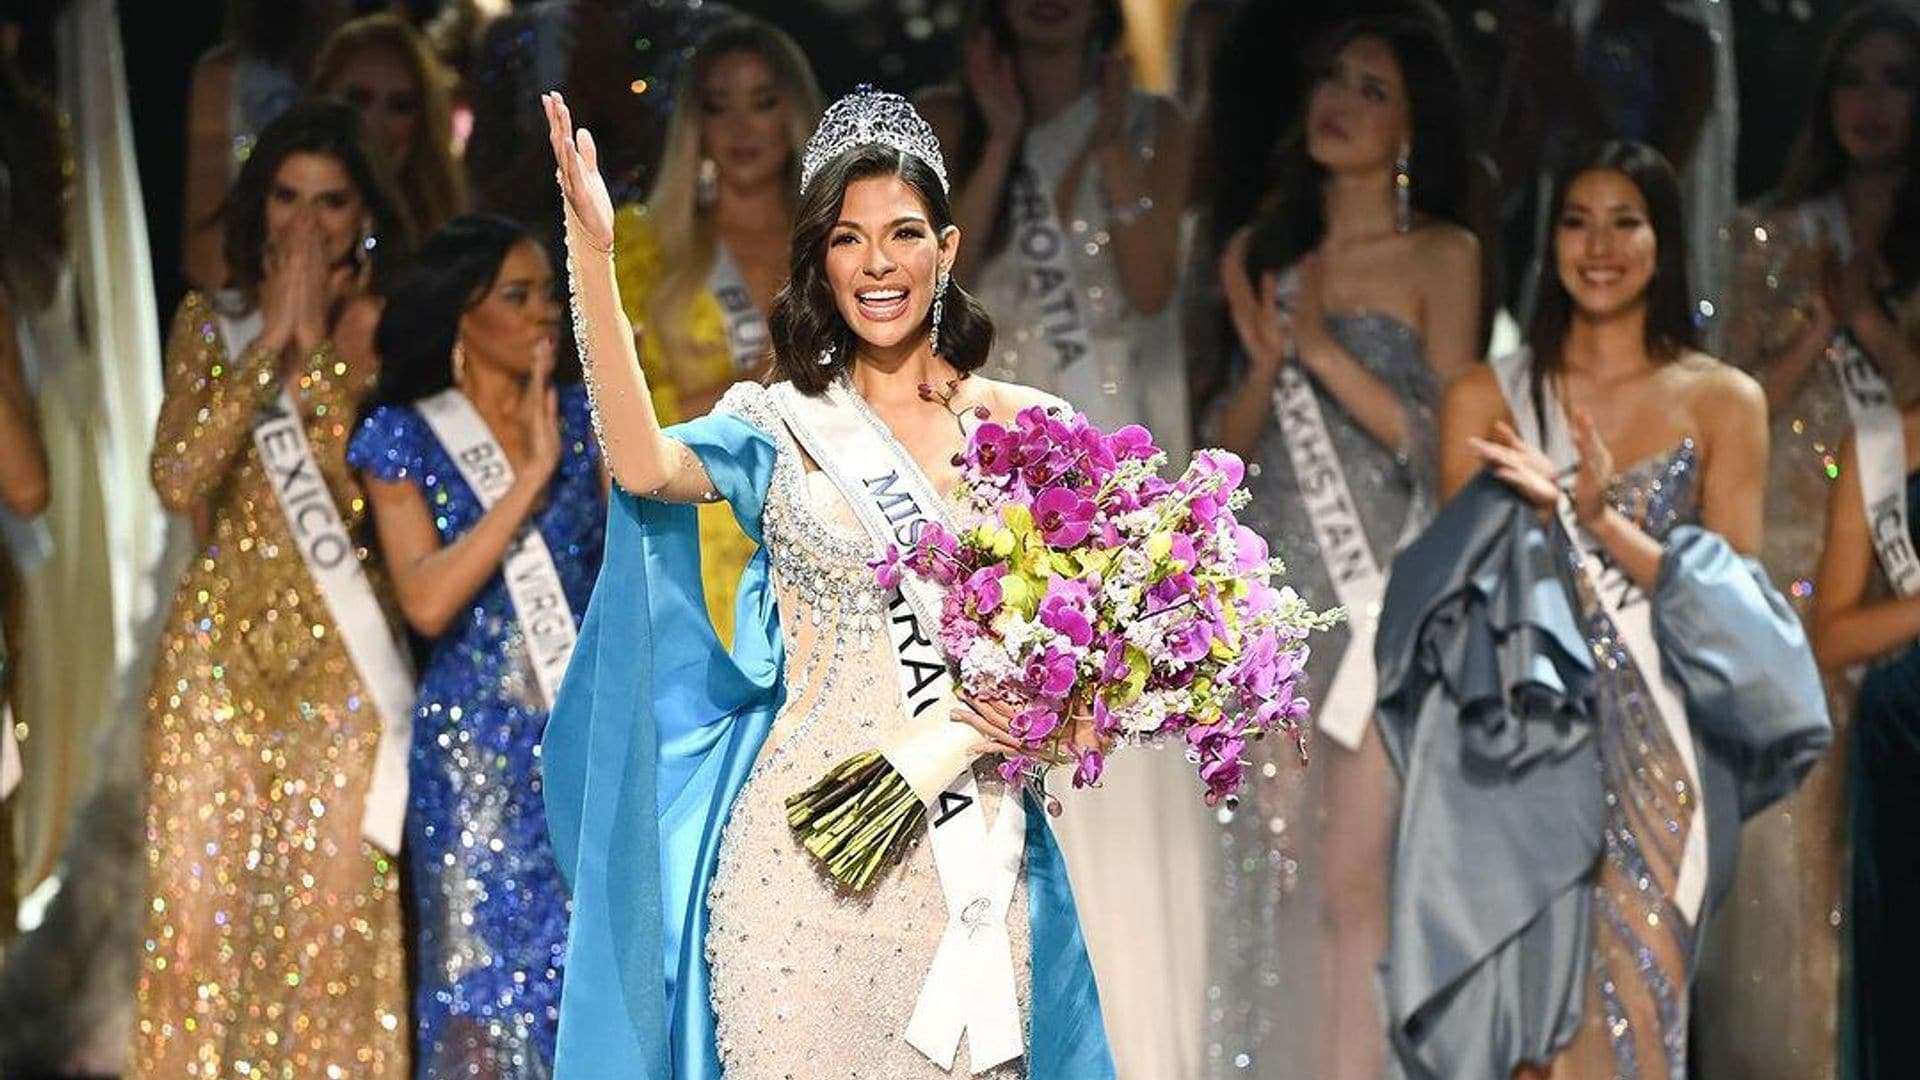 Revelan imágenes inéditas de Sheyniss Palacios tras ganar la corona de Miss Universo